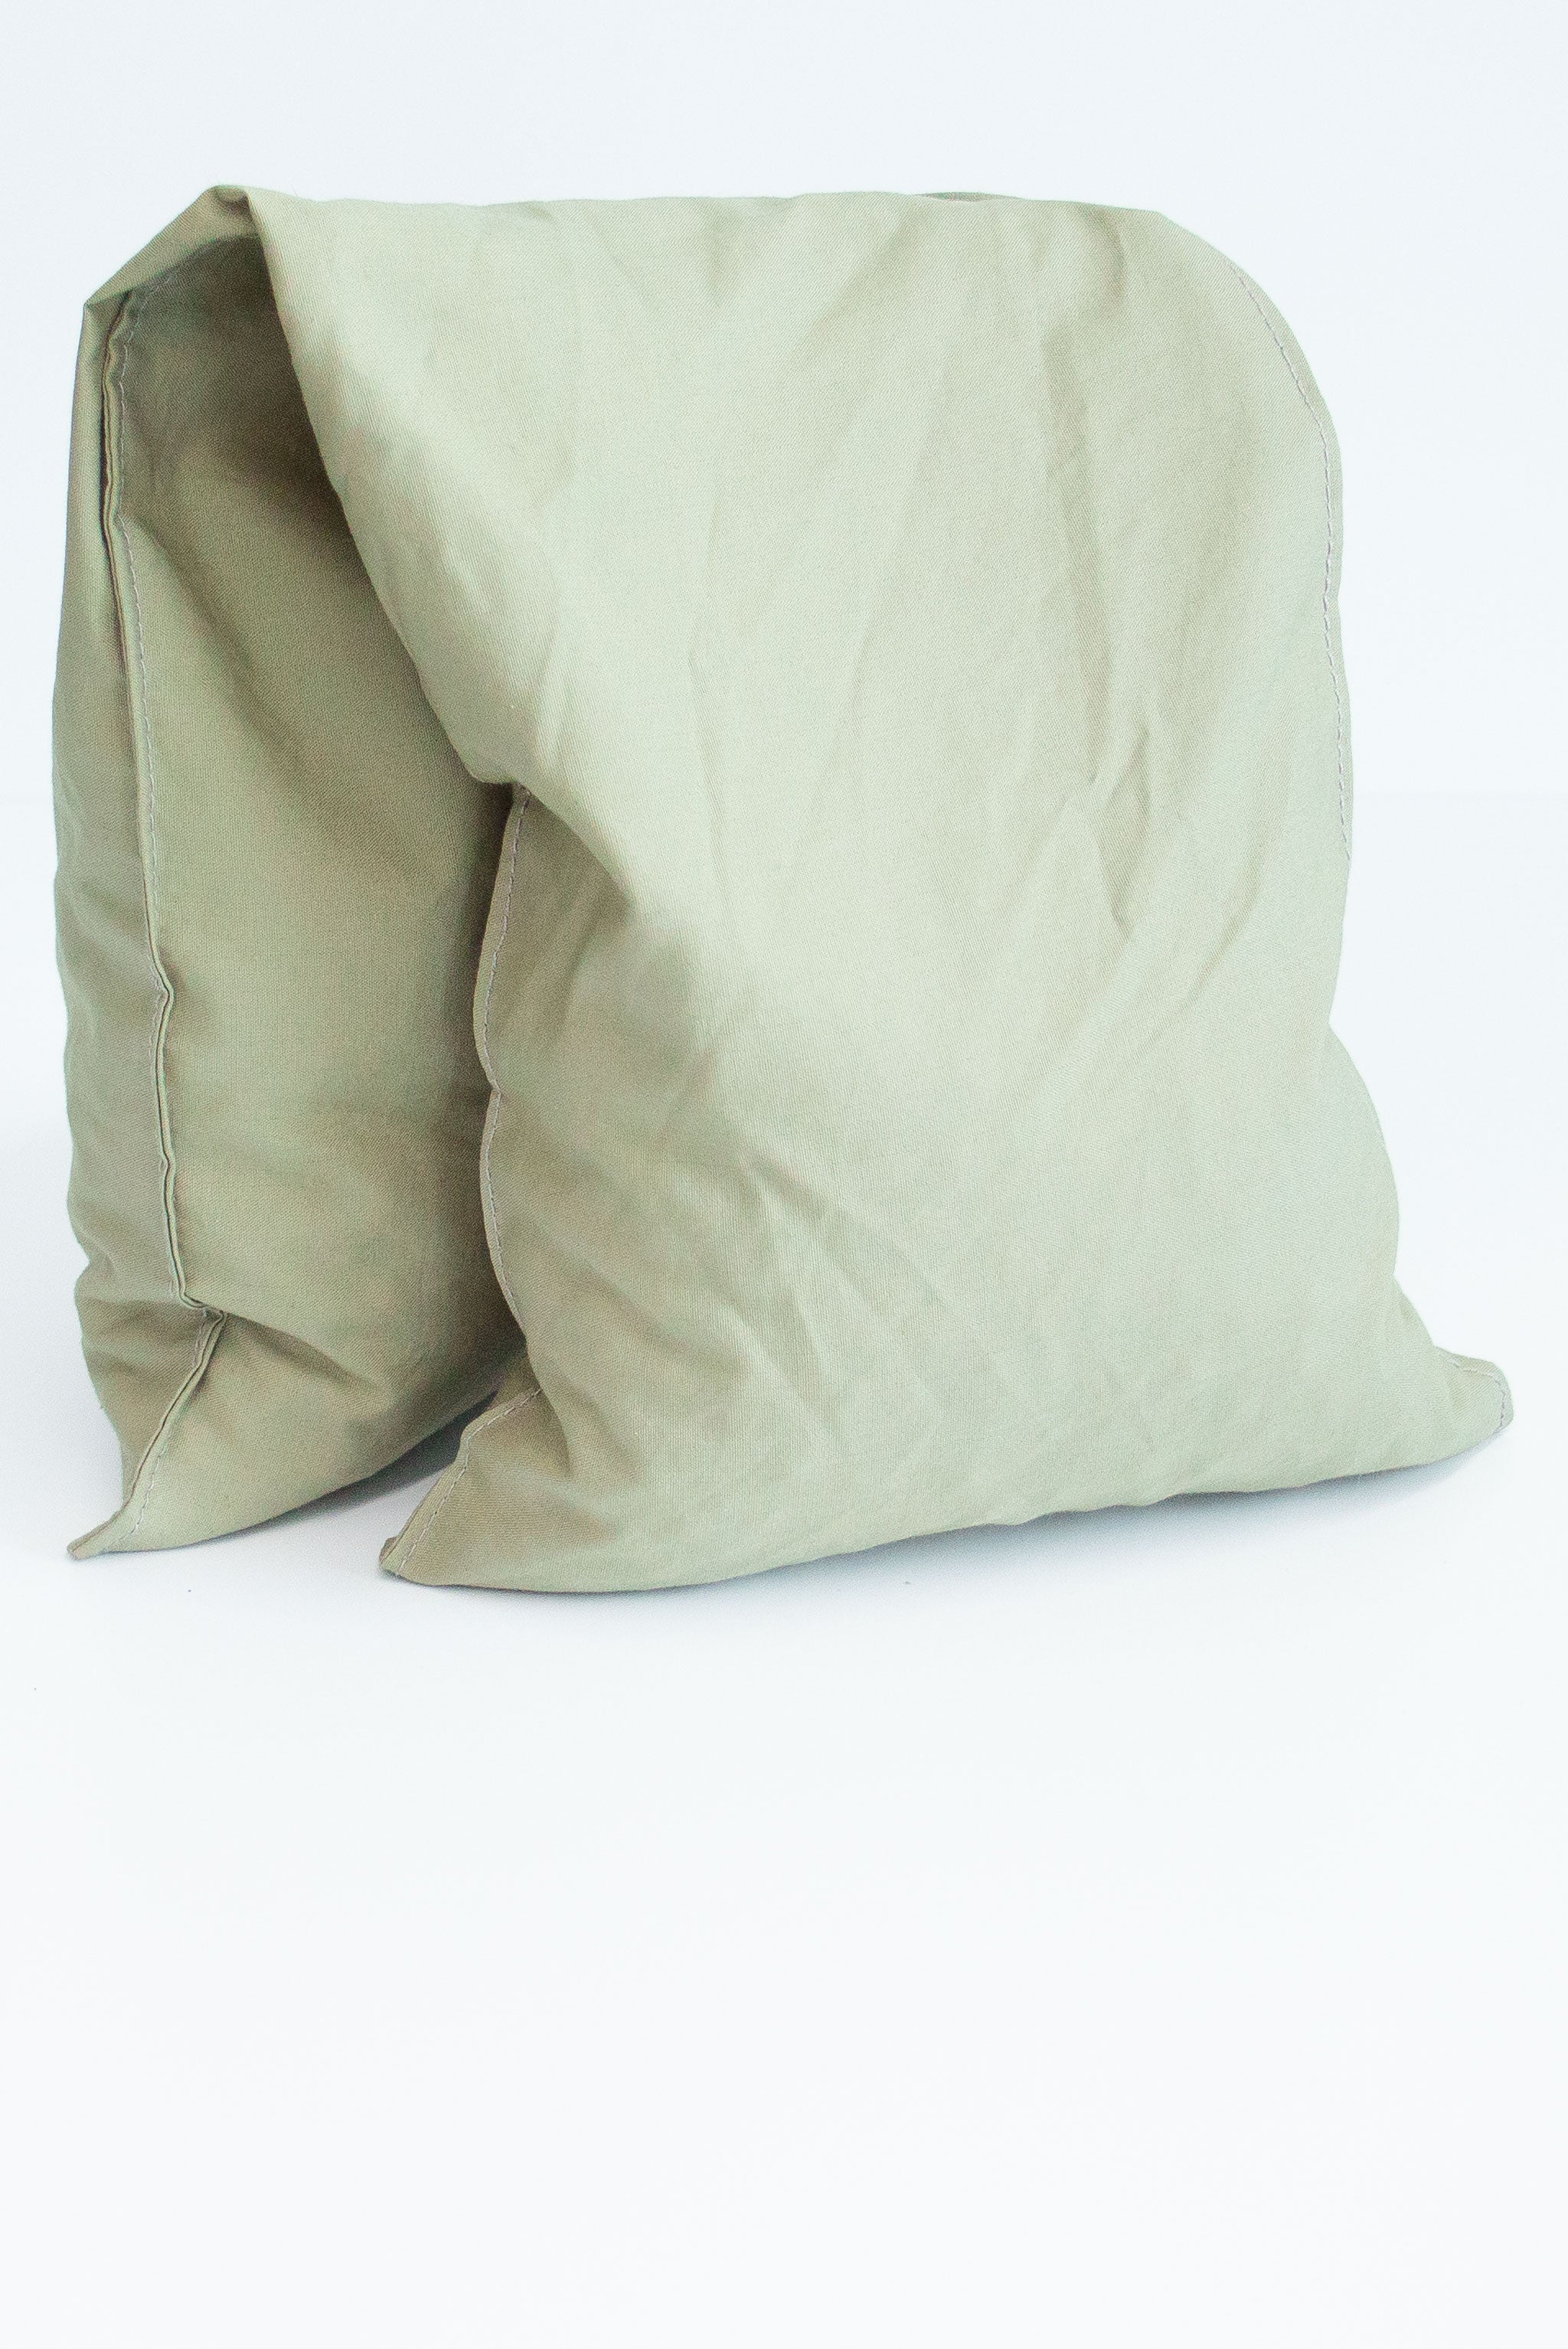 laurel green fabric grain bag folded in half